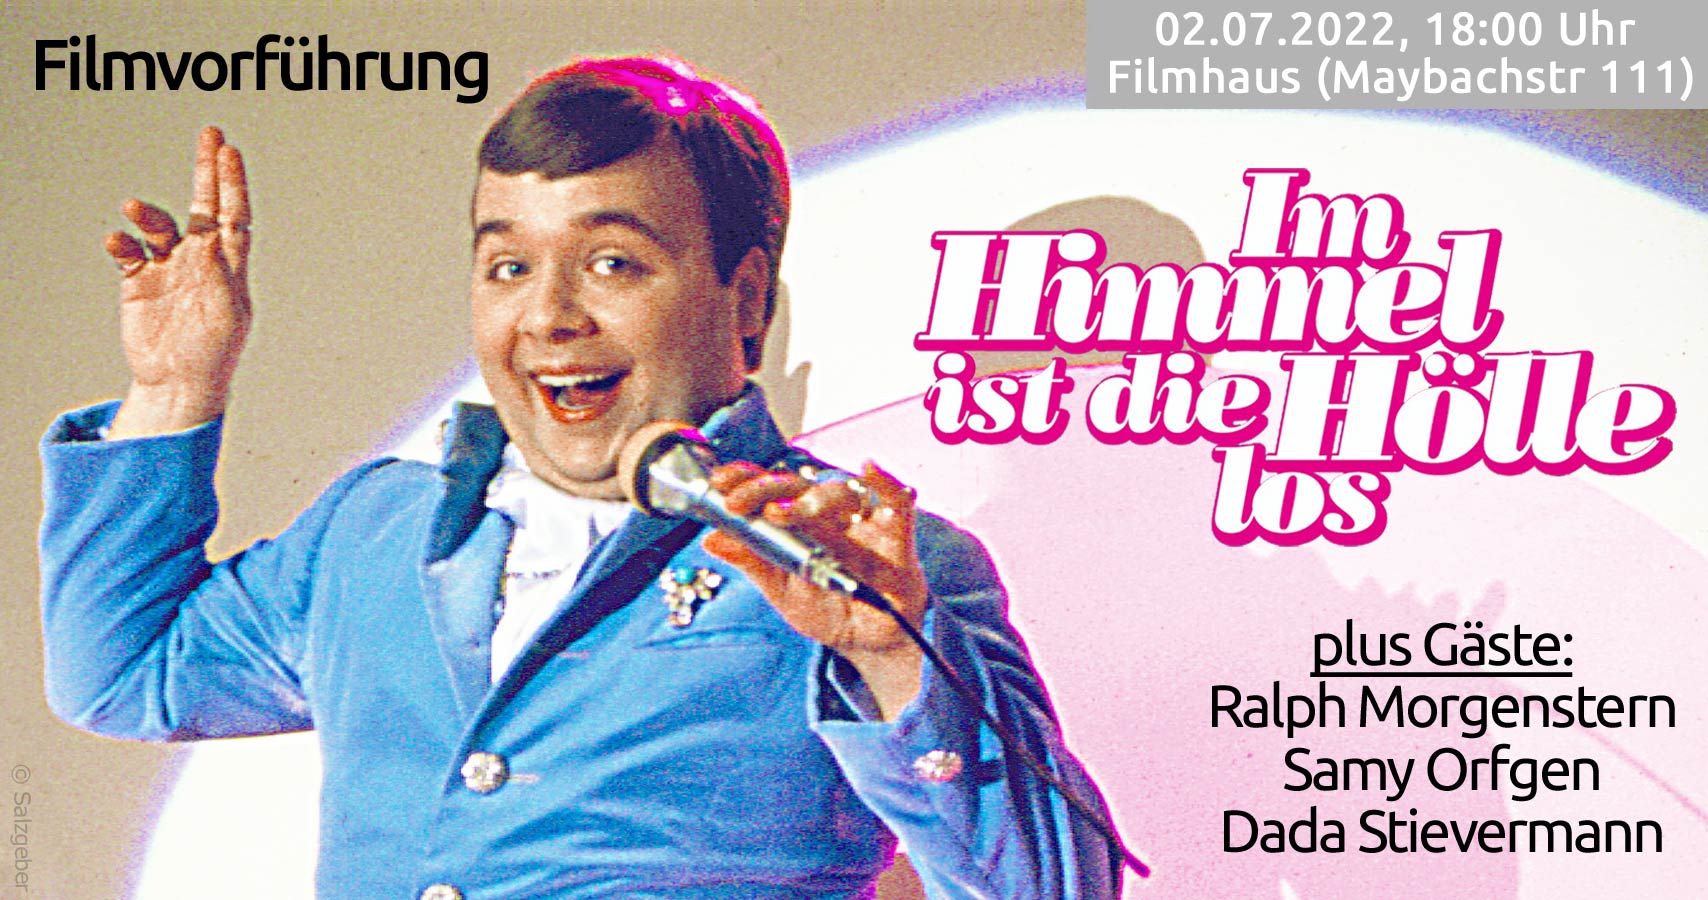 Filmvorführung Im Himmel ist die Hölle los, 1984, Regie, Helmer von Lützelburg, plus Gäste, Ralph Morgenstern, Samy Orfgen und Dada Stievermann am 02.07.2022 im Filmhaus, Köln